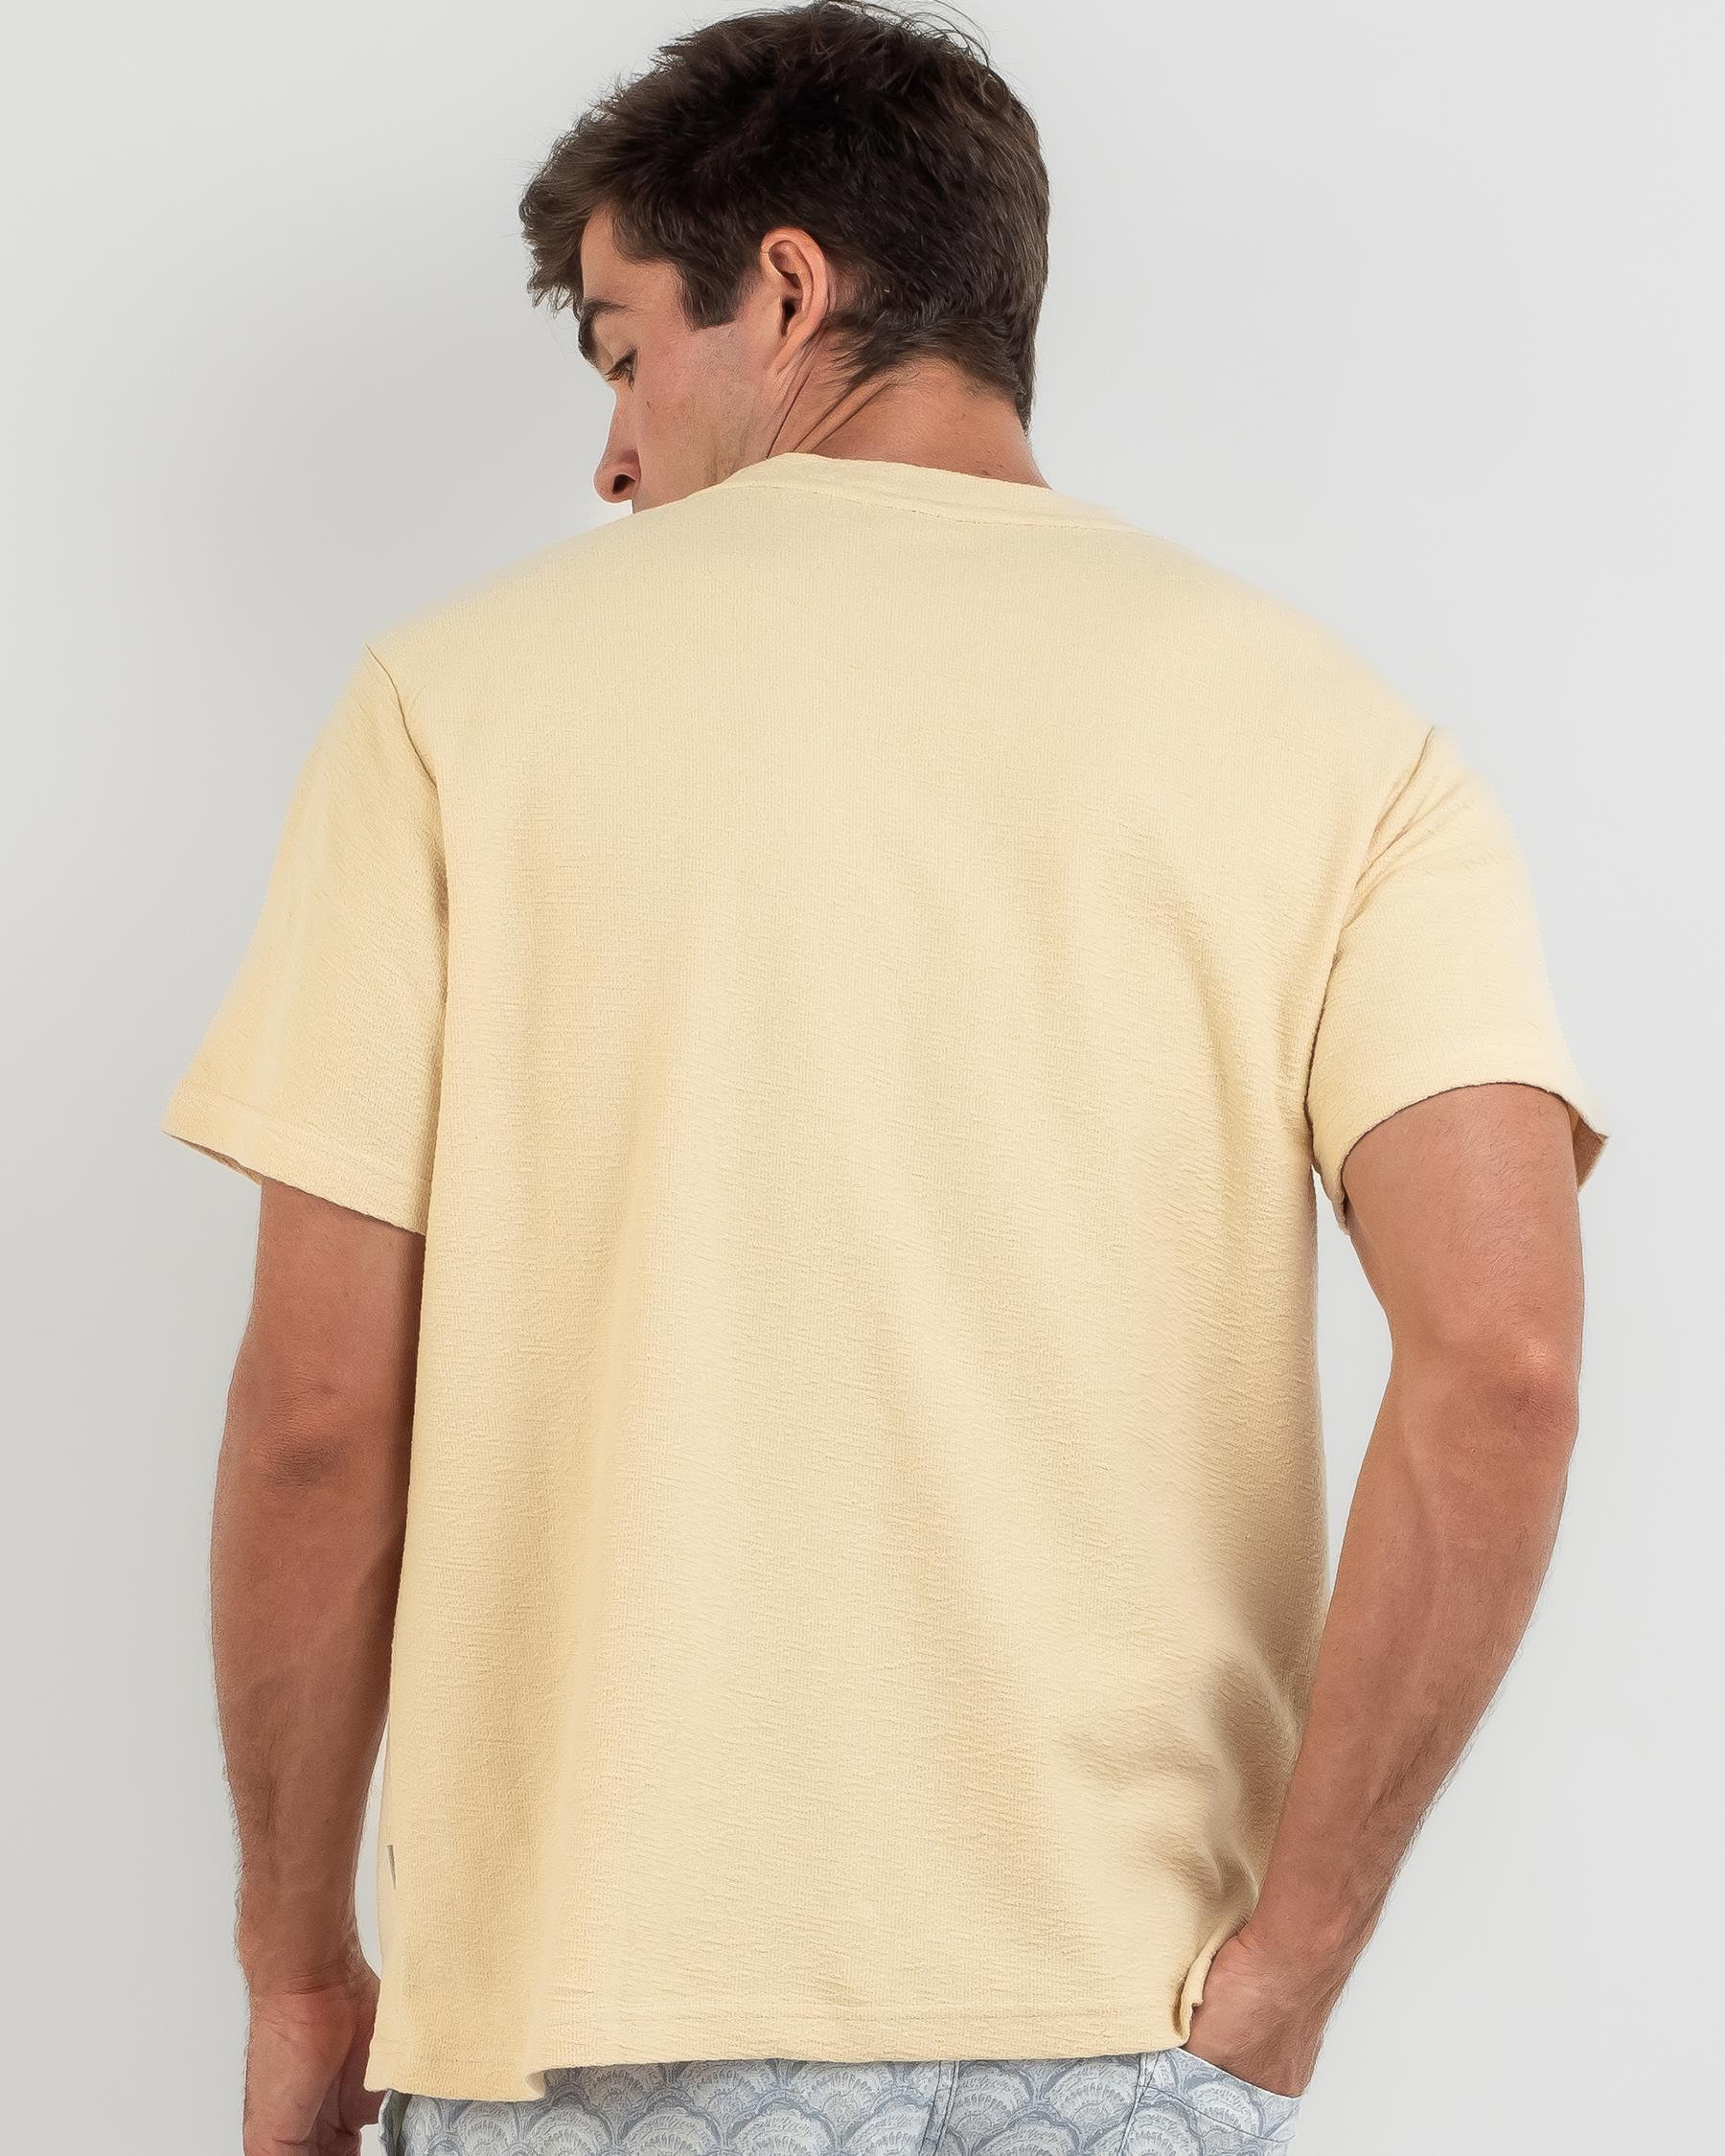 Rhythm Textured Short Sleeve T-Shirt In Ecru - Fast Shipping & Easy ...